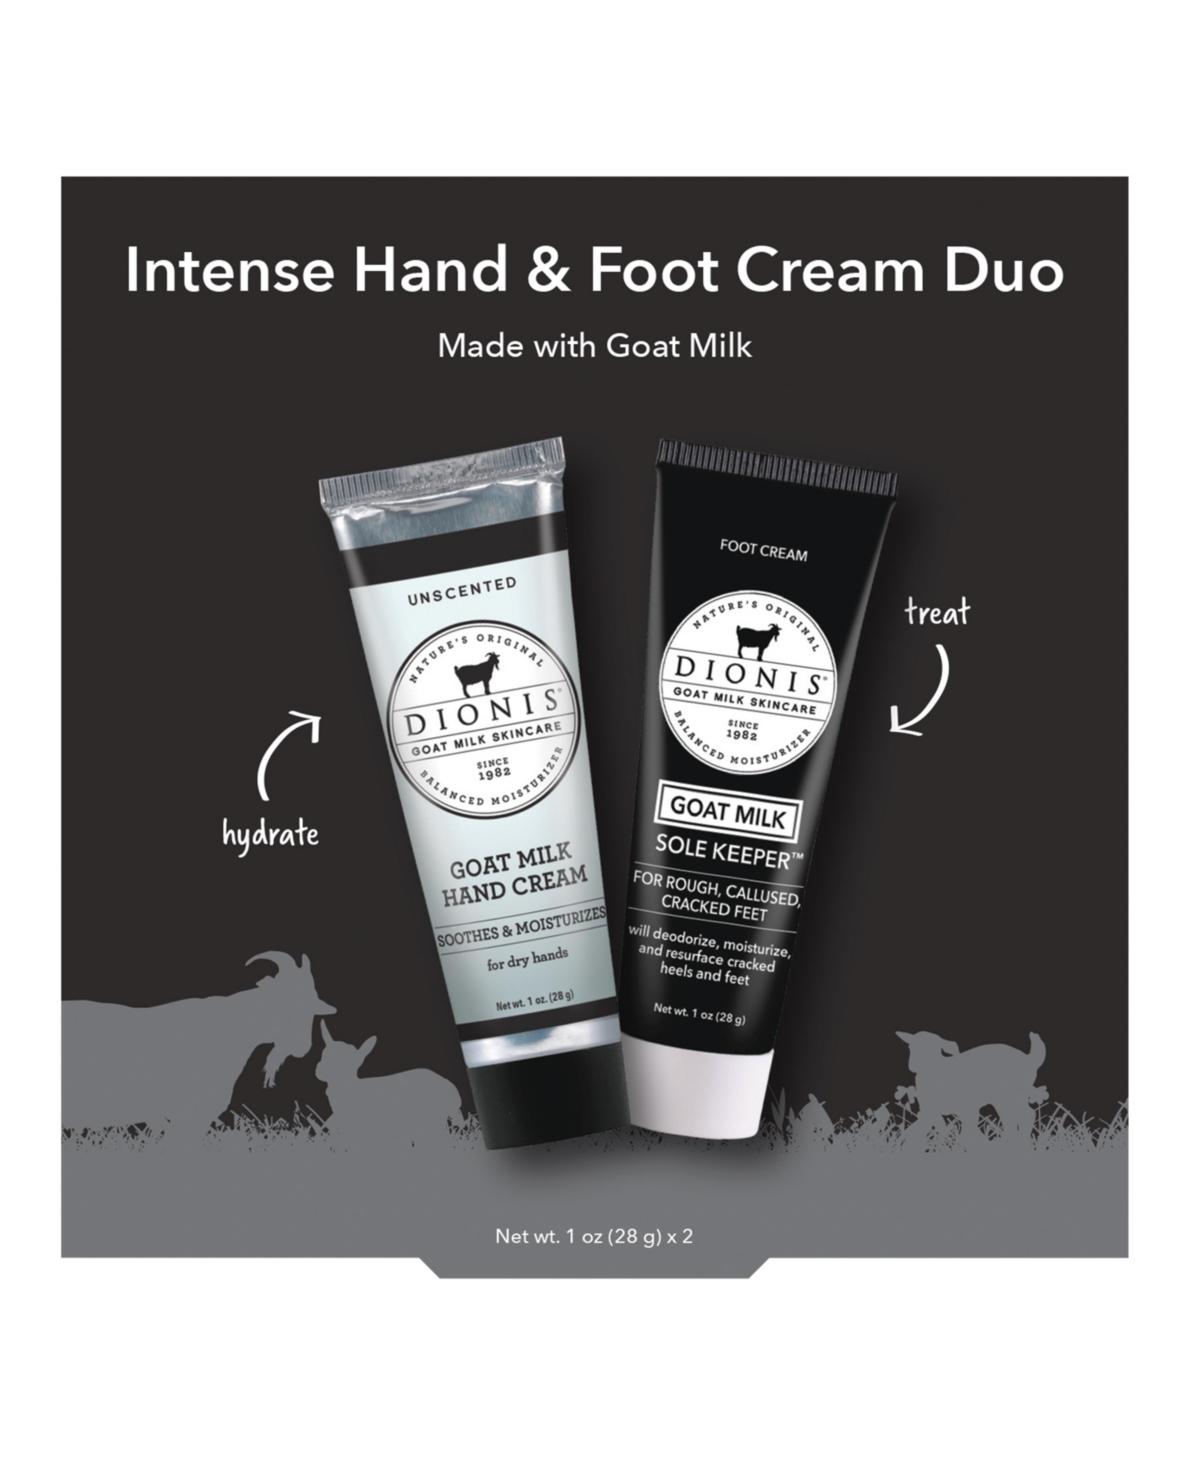 Intense Hand & Foot Cream Duo